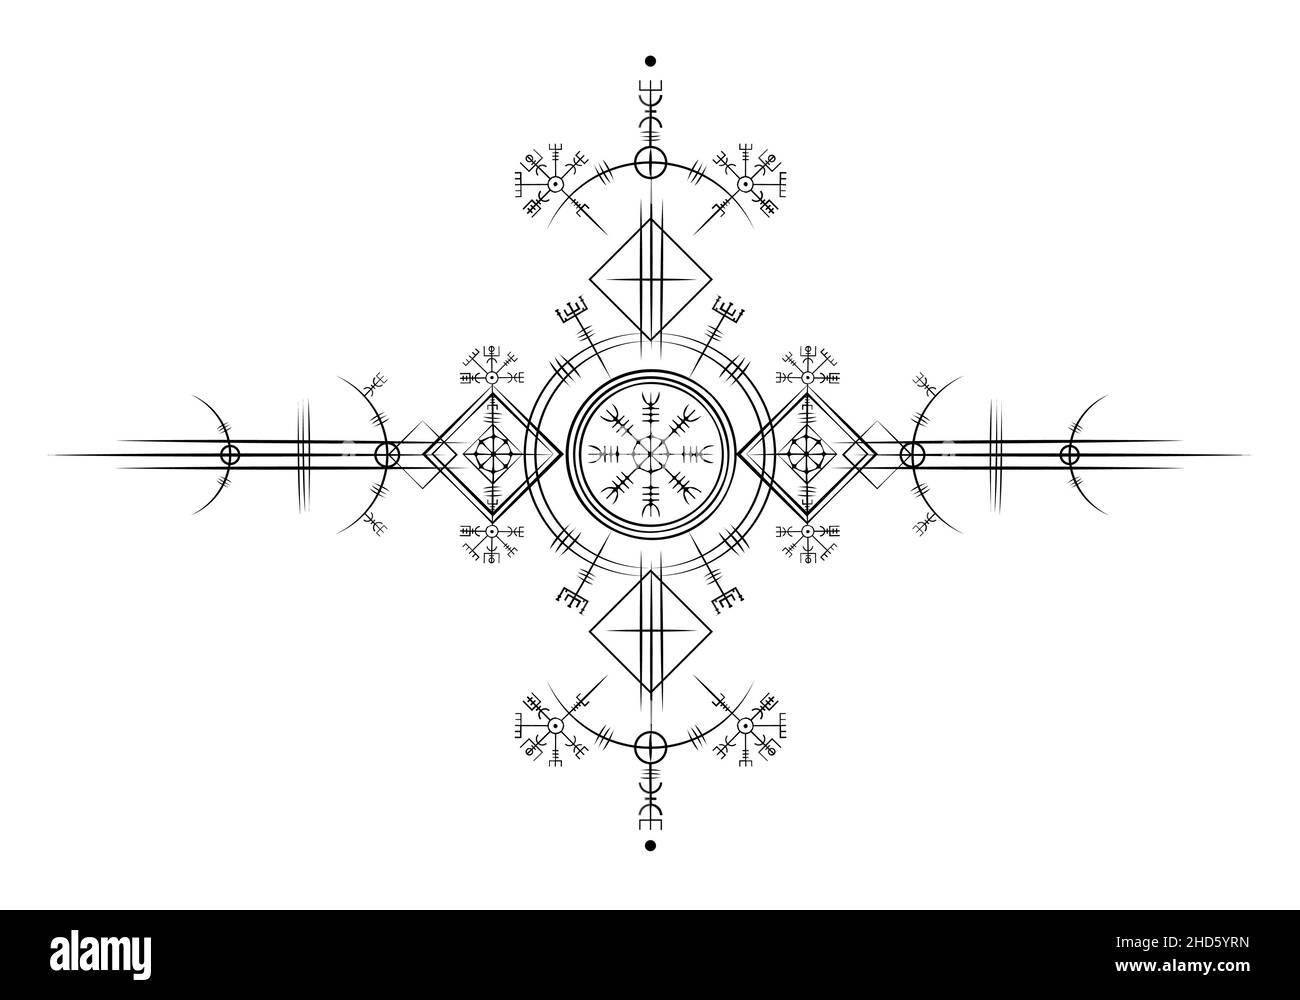 Magischer alter wikinger Art deco, Weißer Vegvisir Navigationskompass uralt. Die Wikinger verwendeten viele Symbole in Übereinstimmung mit der nordischen Mythologie, Logo-Zeichen Stock Vektor